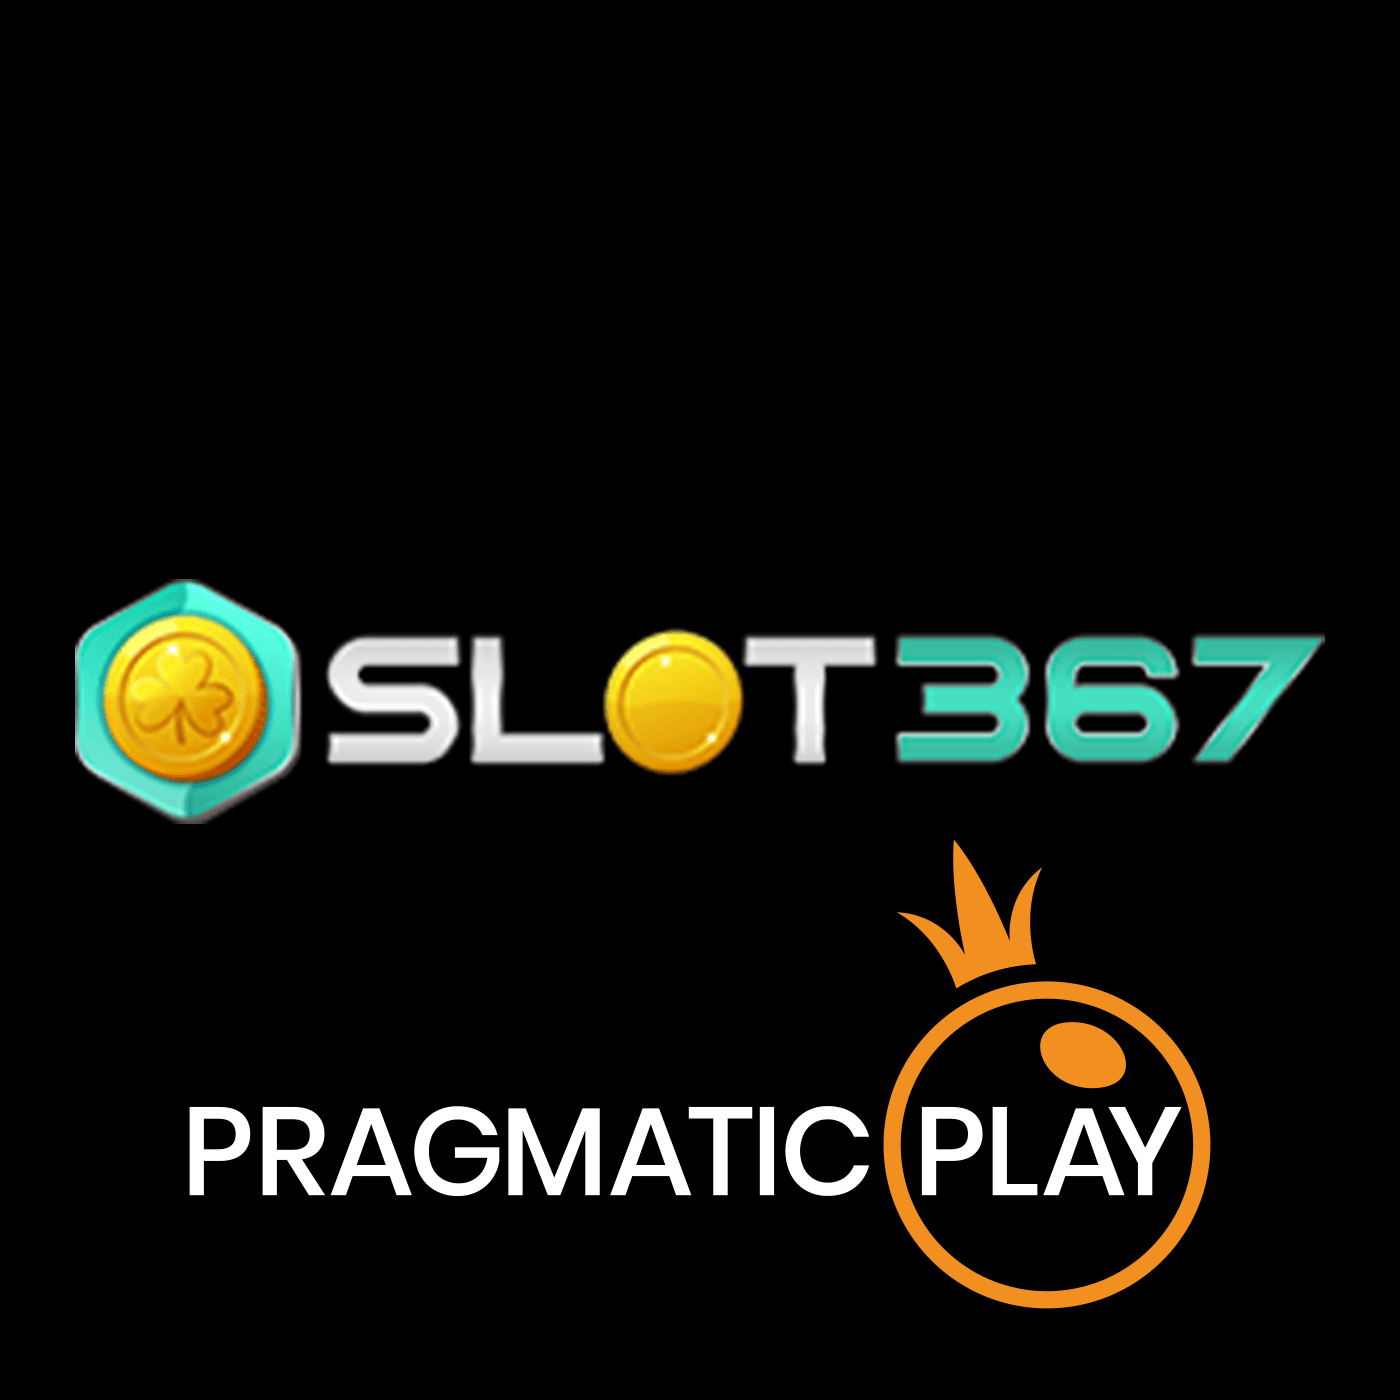 Slot367 bannière